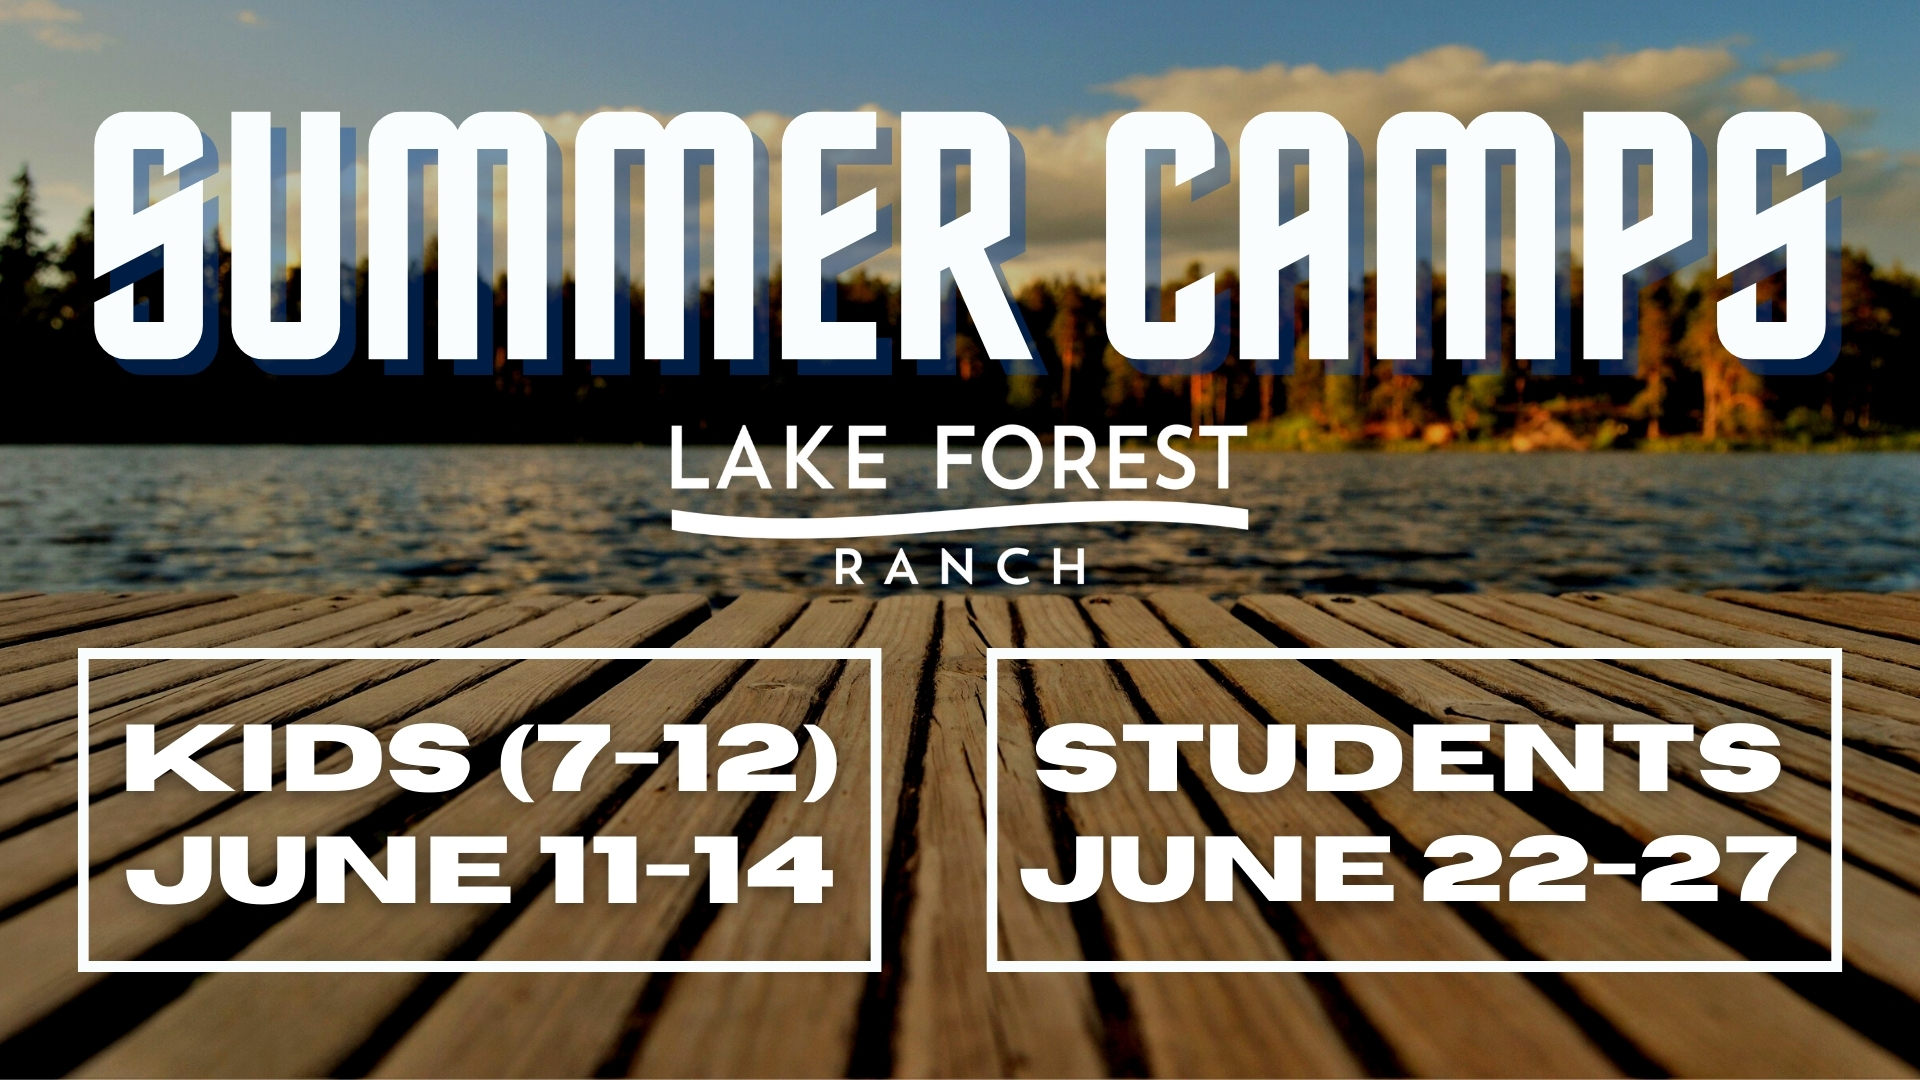 Register for Summer Camp!